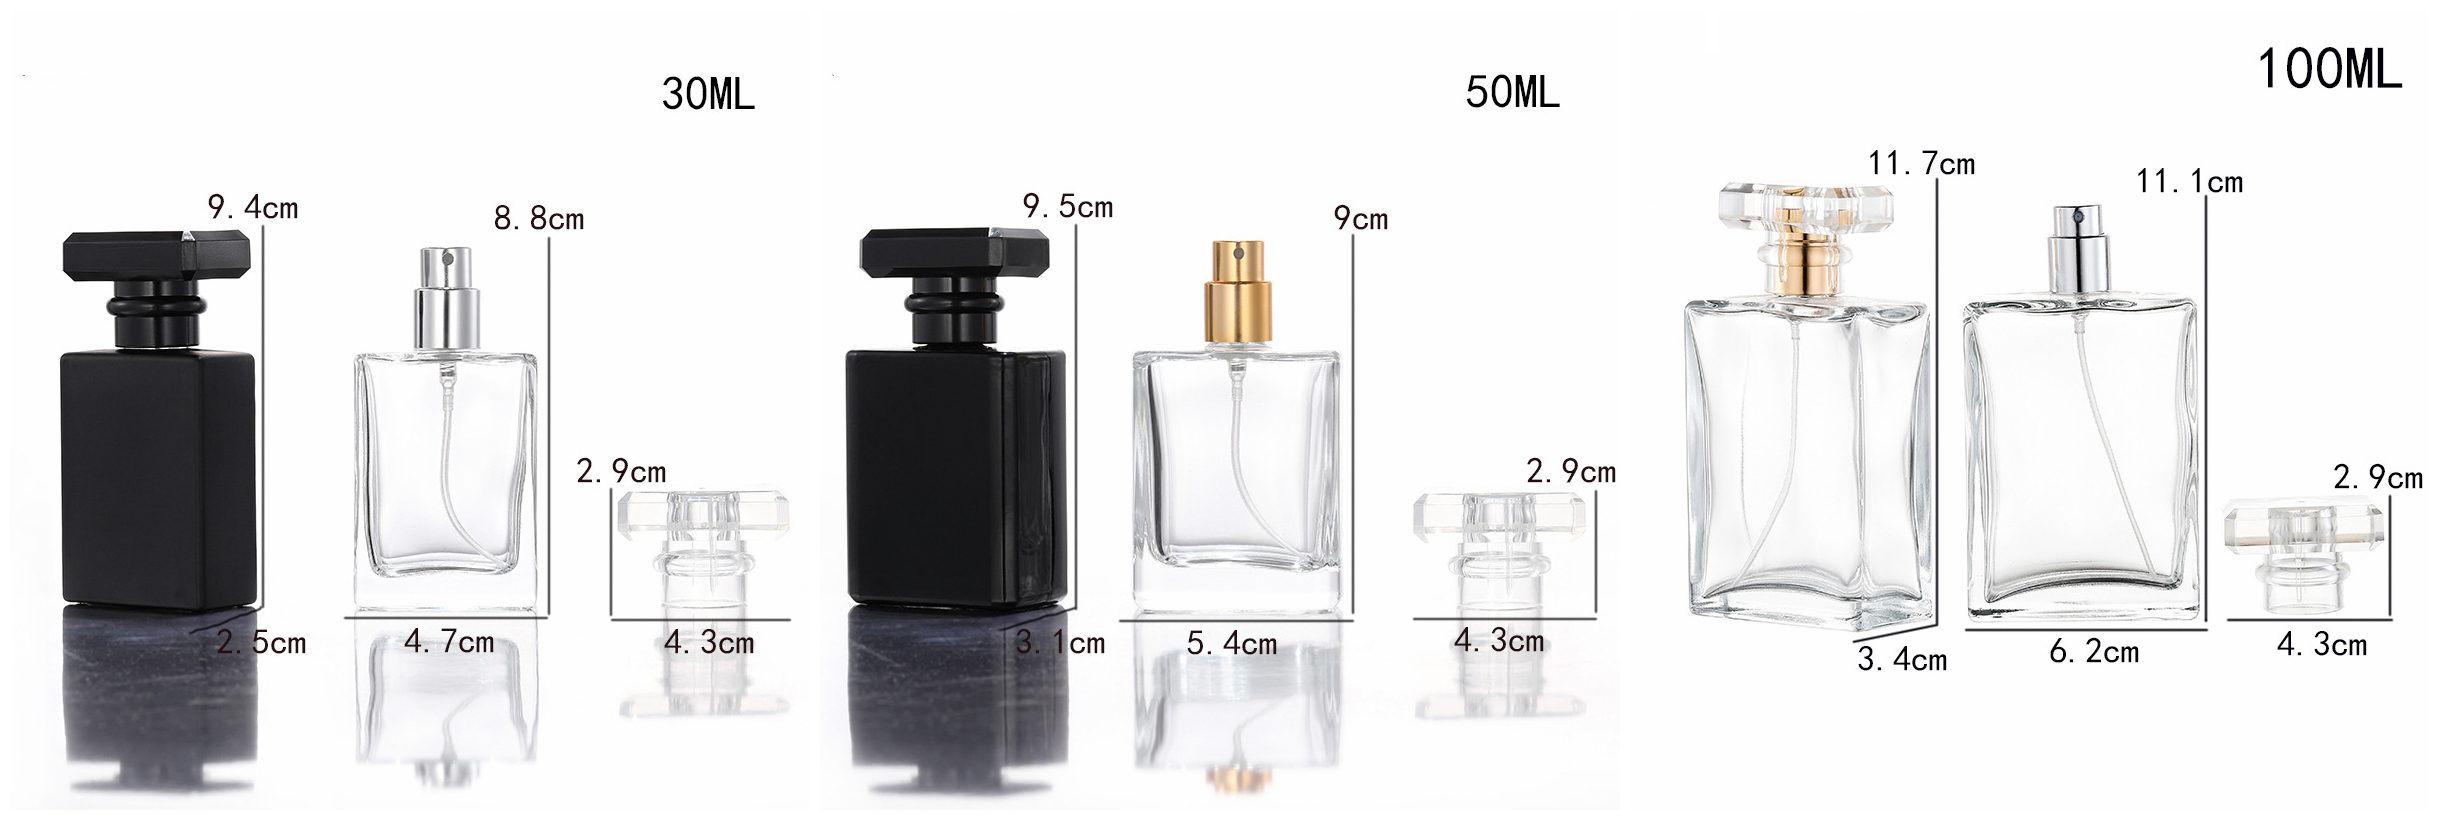 Bottiglia di profumo in vetro con lo stesso design di Chanel con tappo